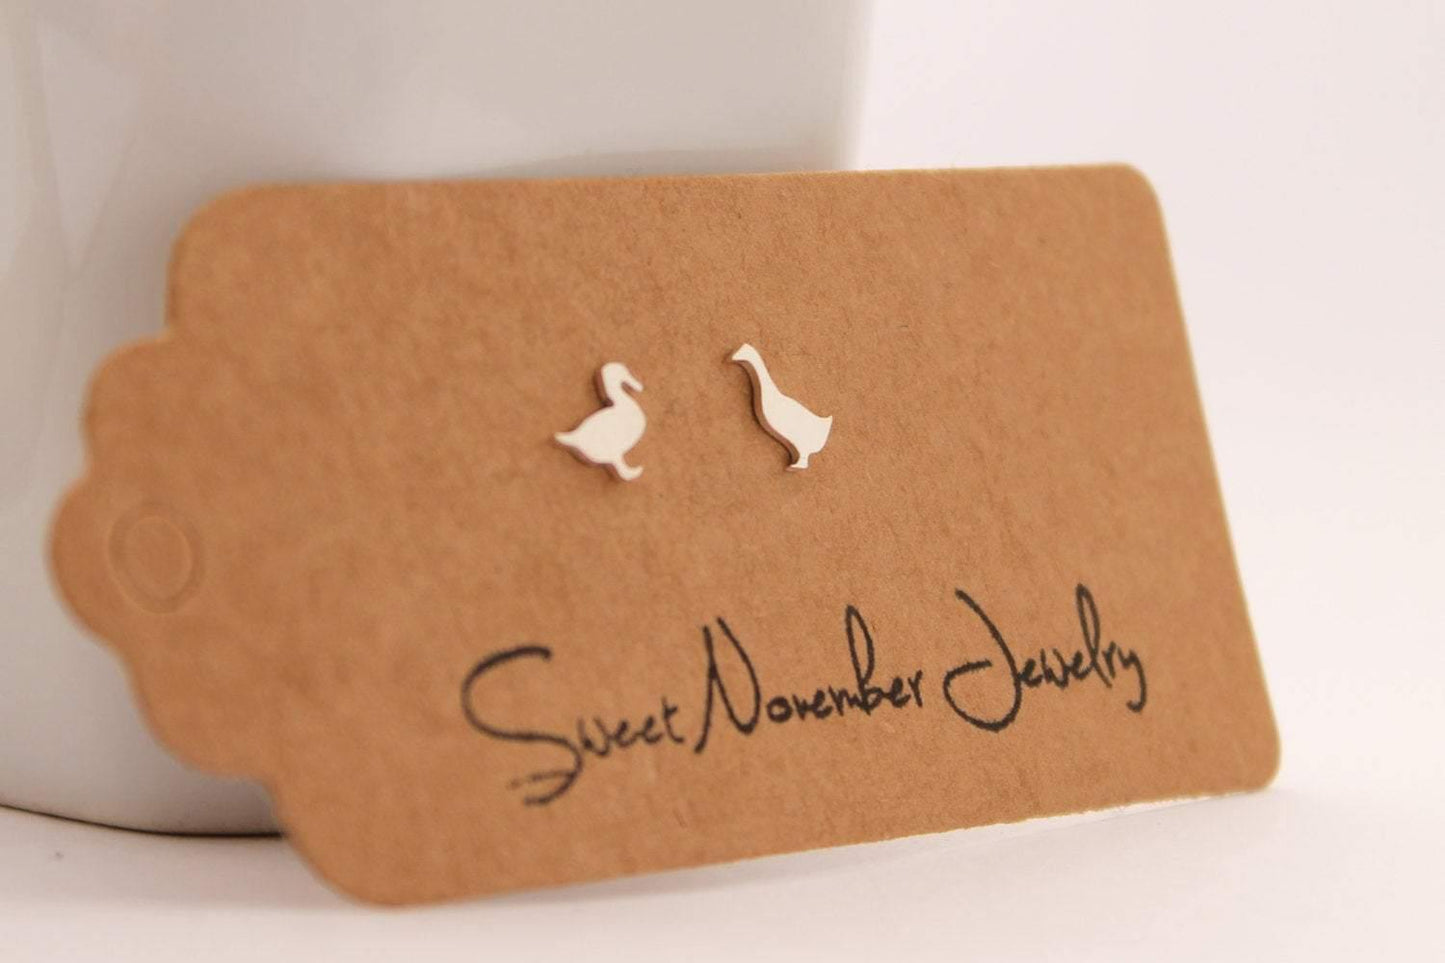 Pair of Mismatch Geese Stud Earrings - Sweet November Jewelry